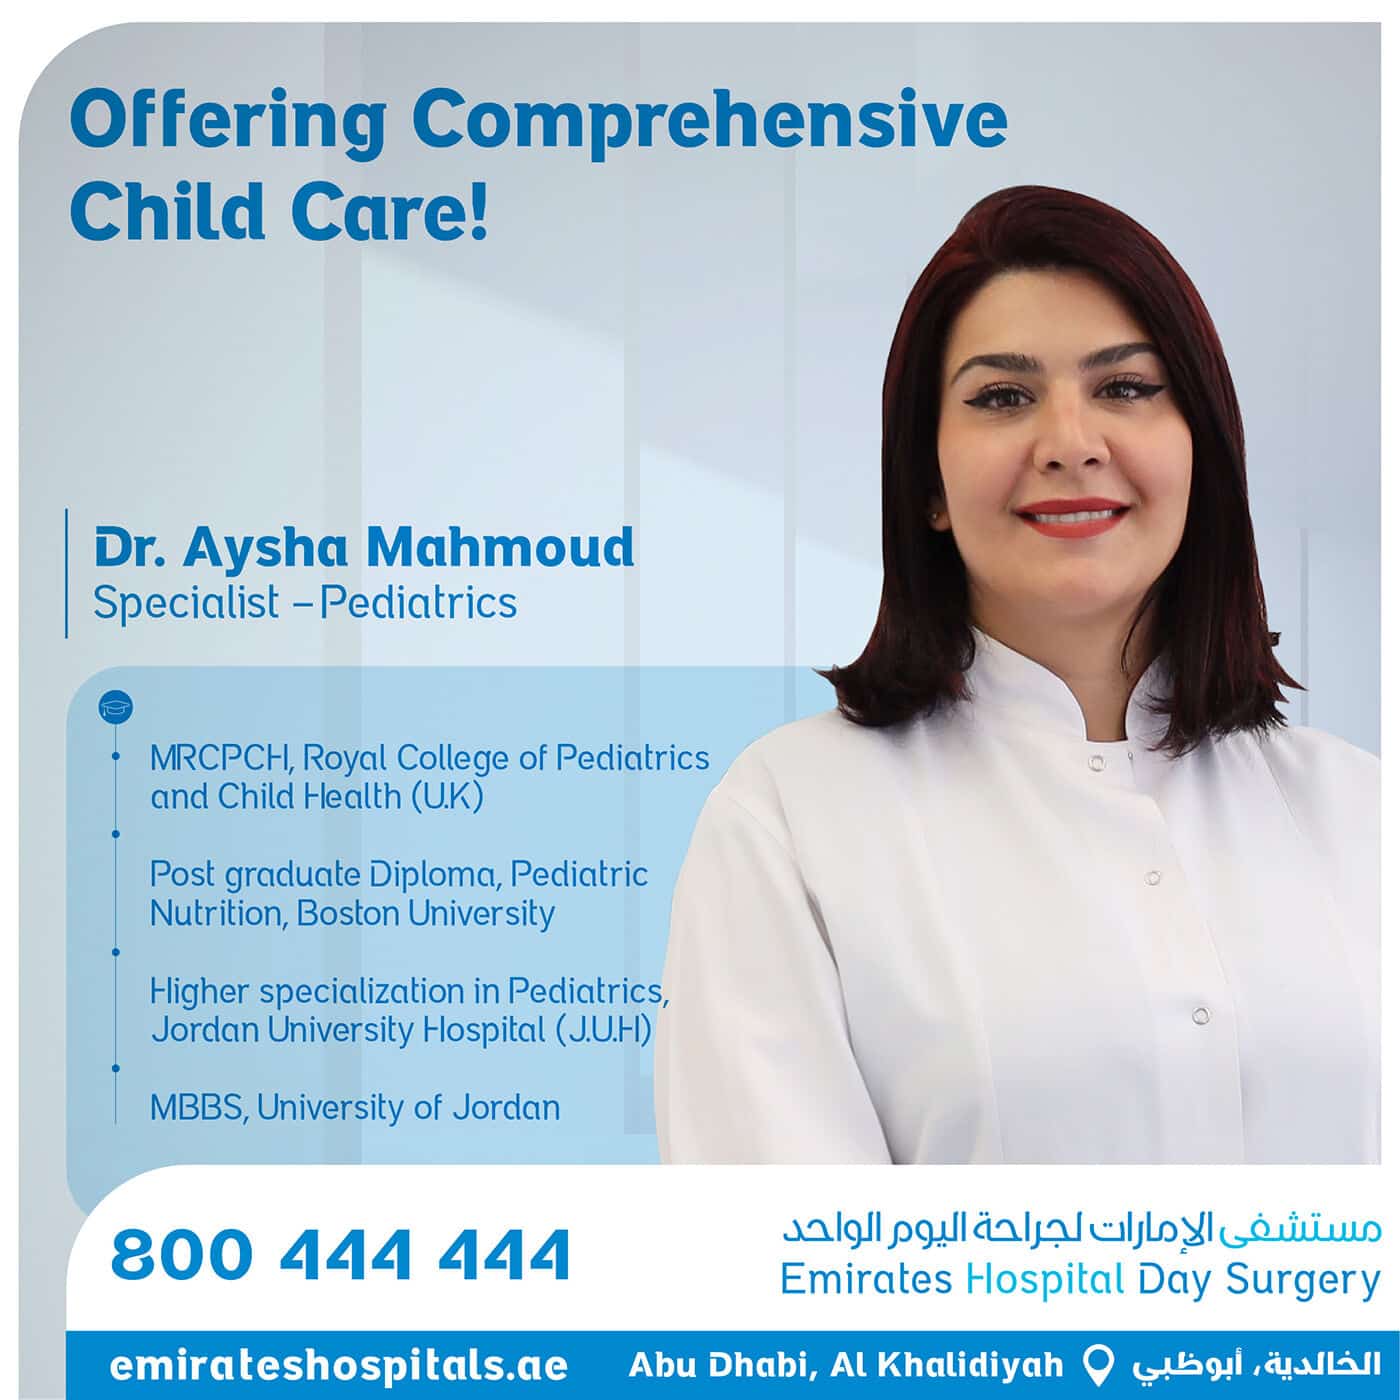 Dr. Aysha Mahmoud, Specialist – Pediatrics Joined Emirates Hospital Day Surgery, Abu Dhabi